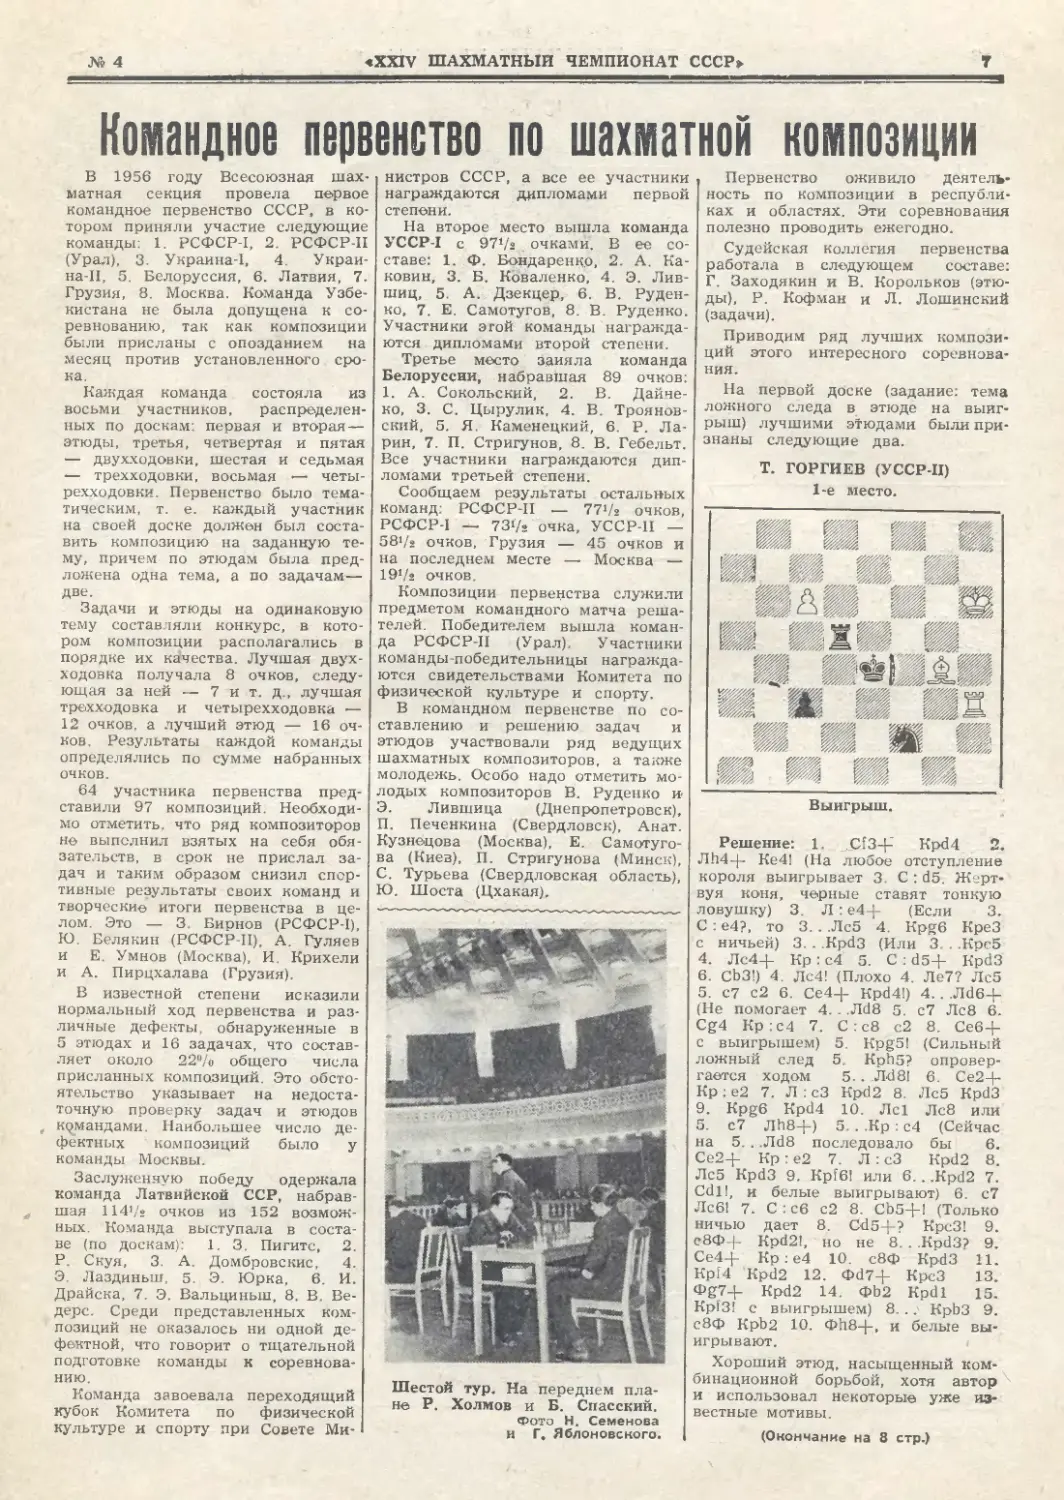 Р.Кофман - Командное первенство по шахматной композиции